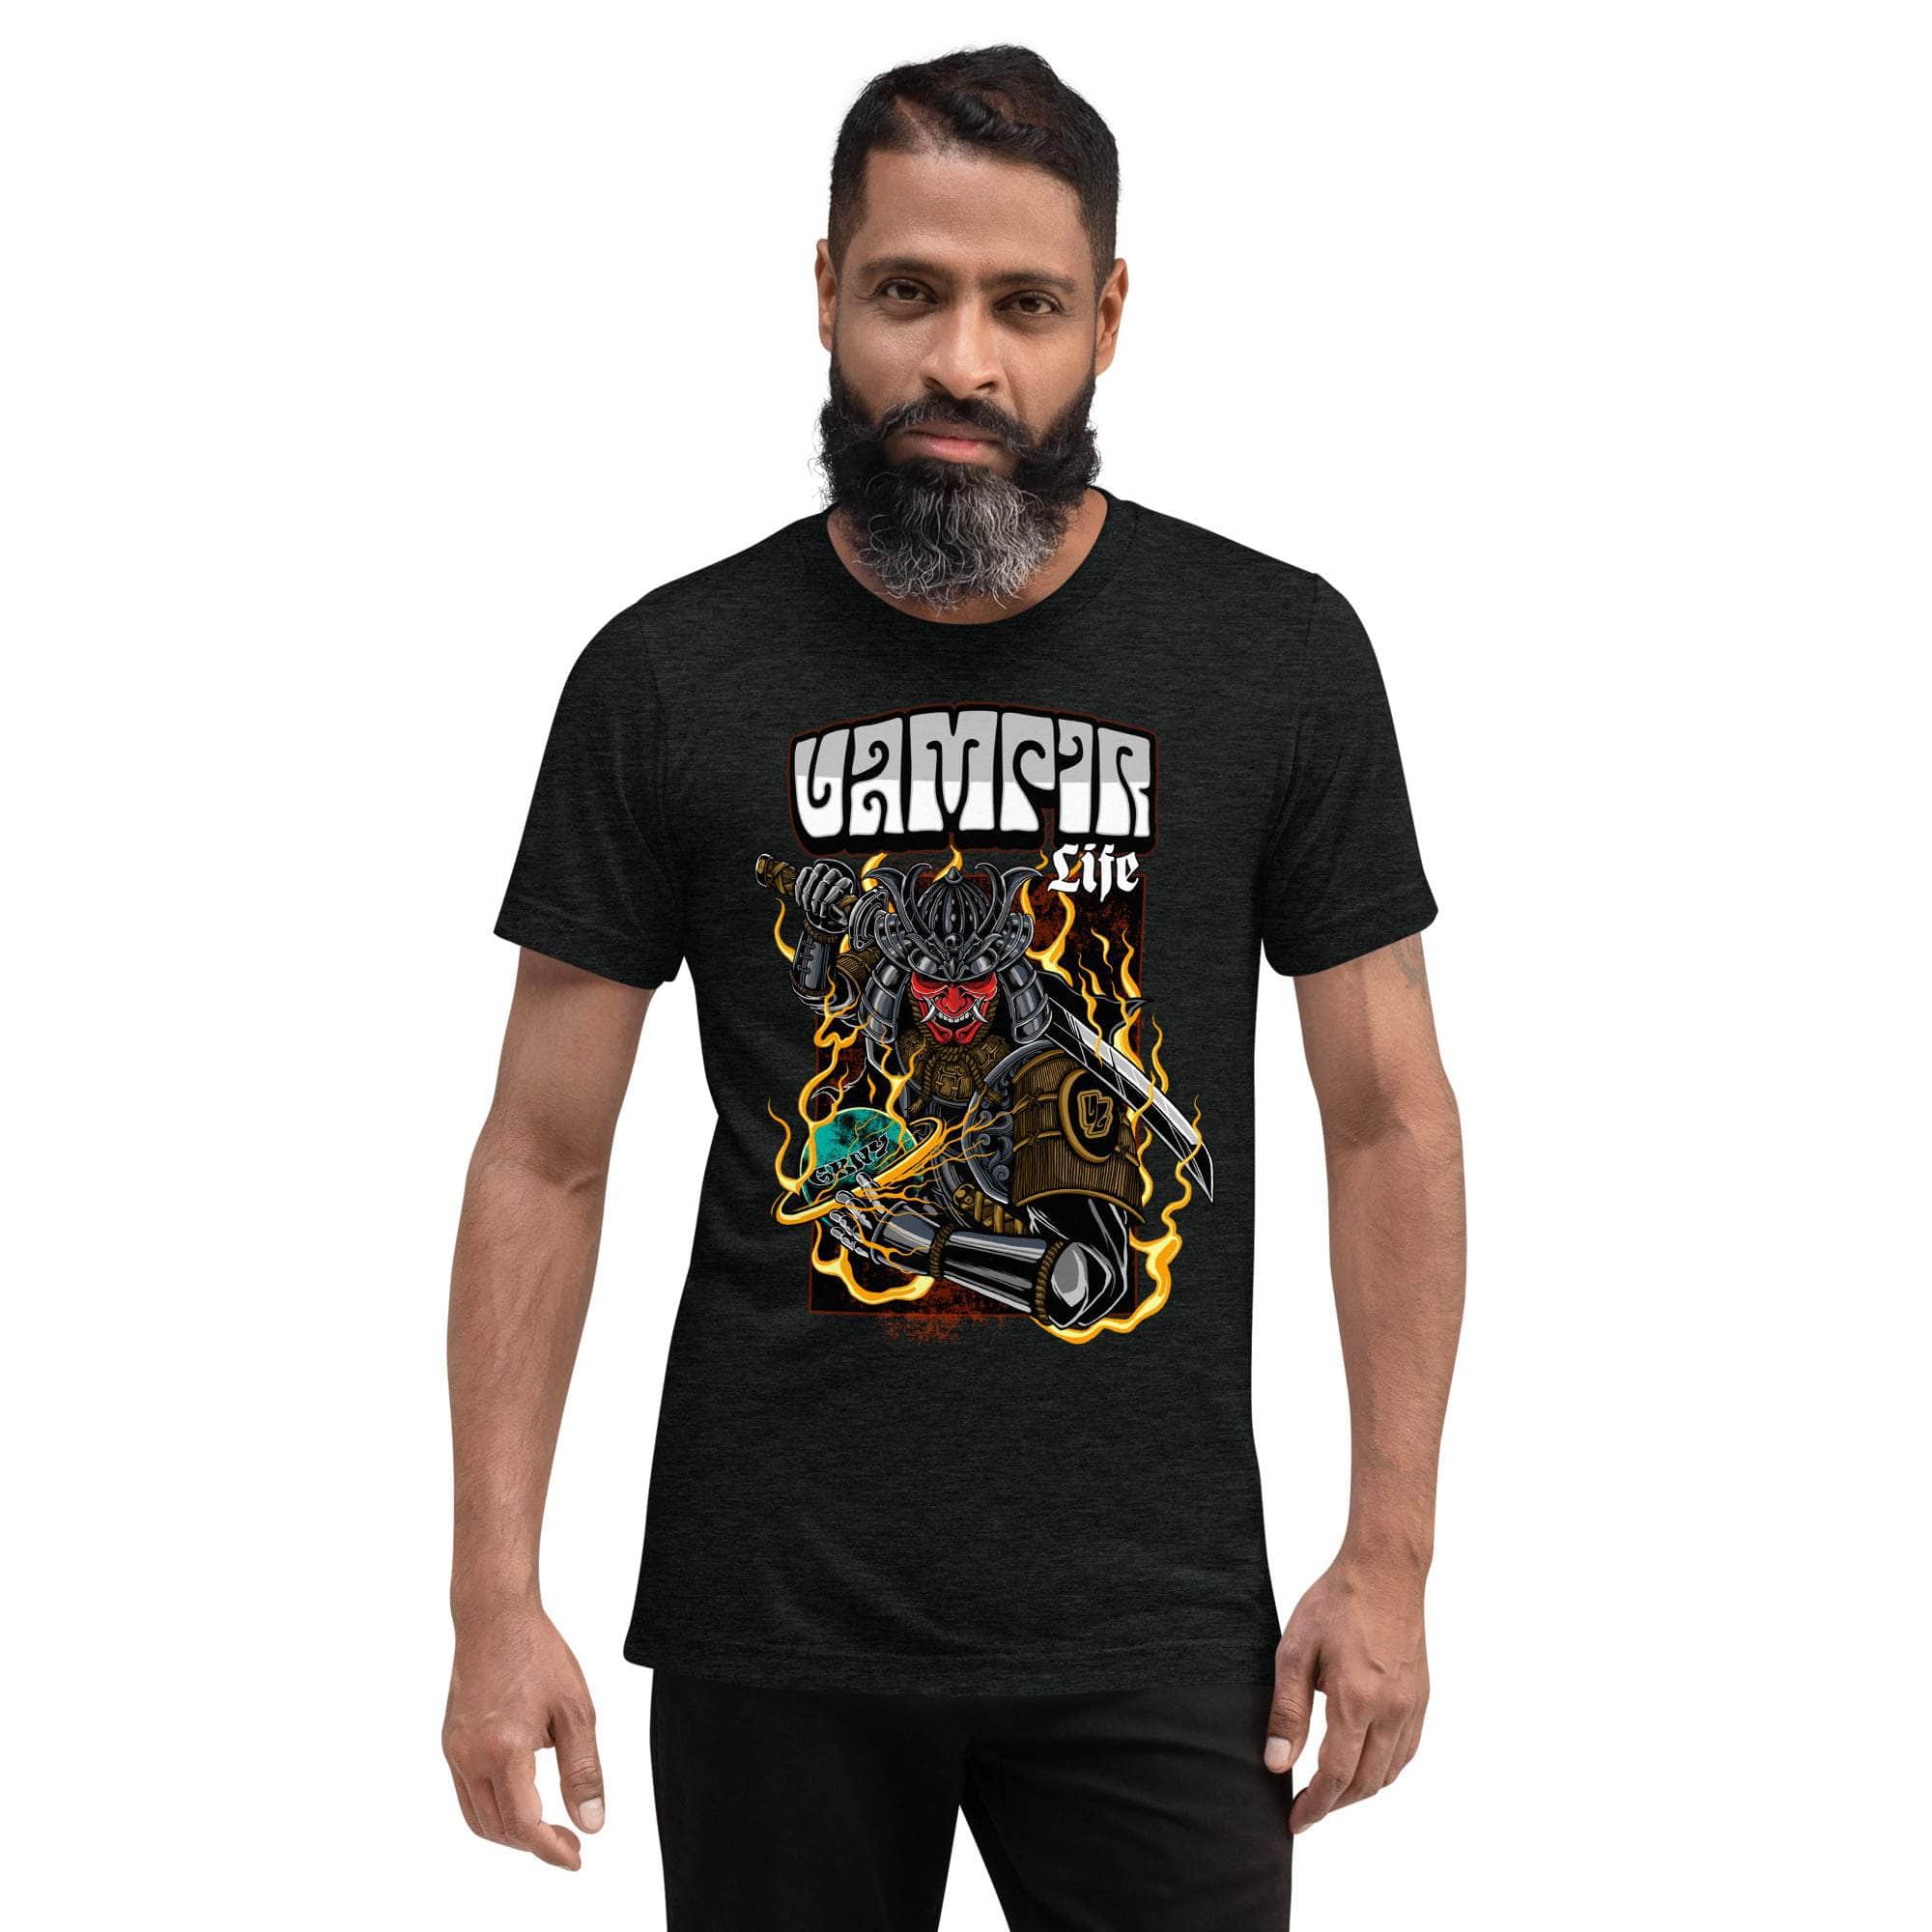 GBNY Charcoal-Black Triblend / XS Vamp Life X GBNY "Onimusha" T-shirt - Men's 1718989_6504